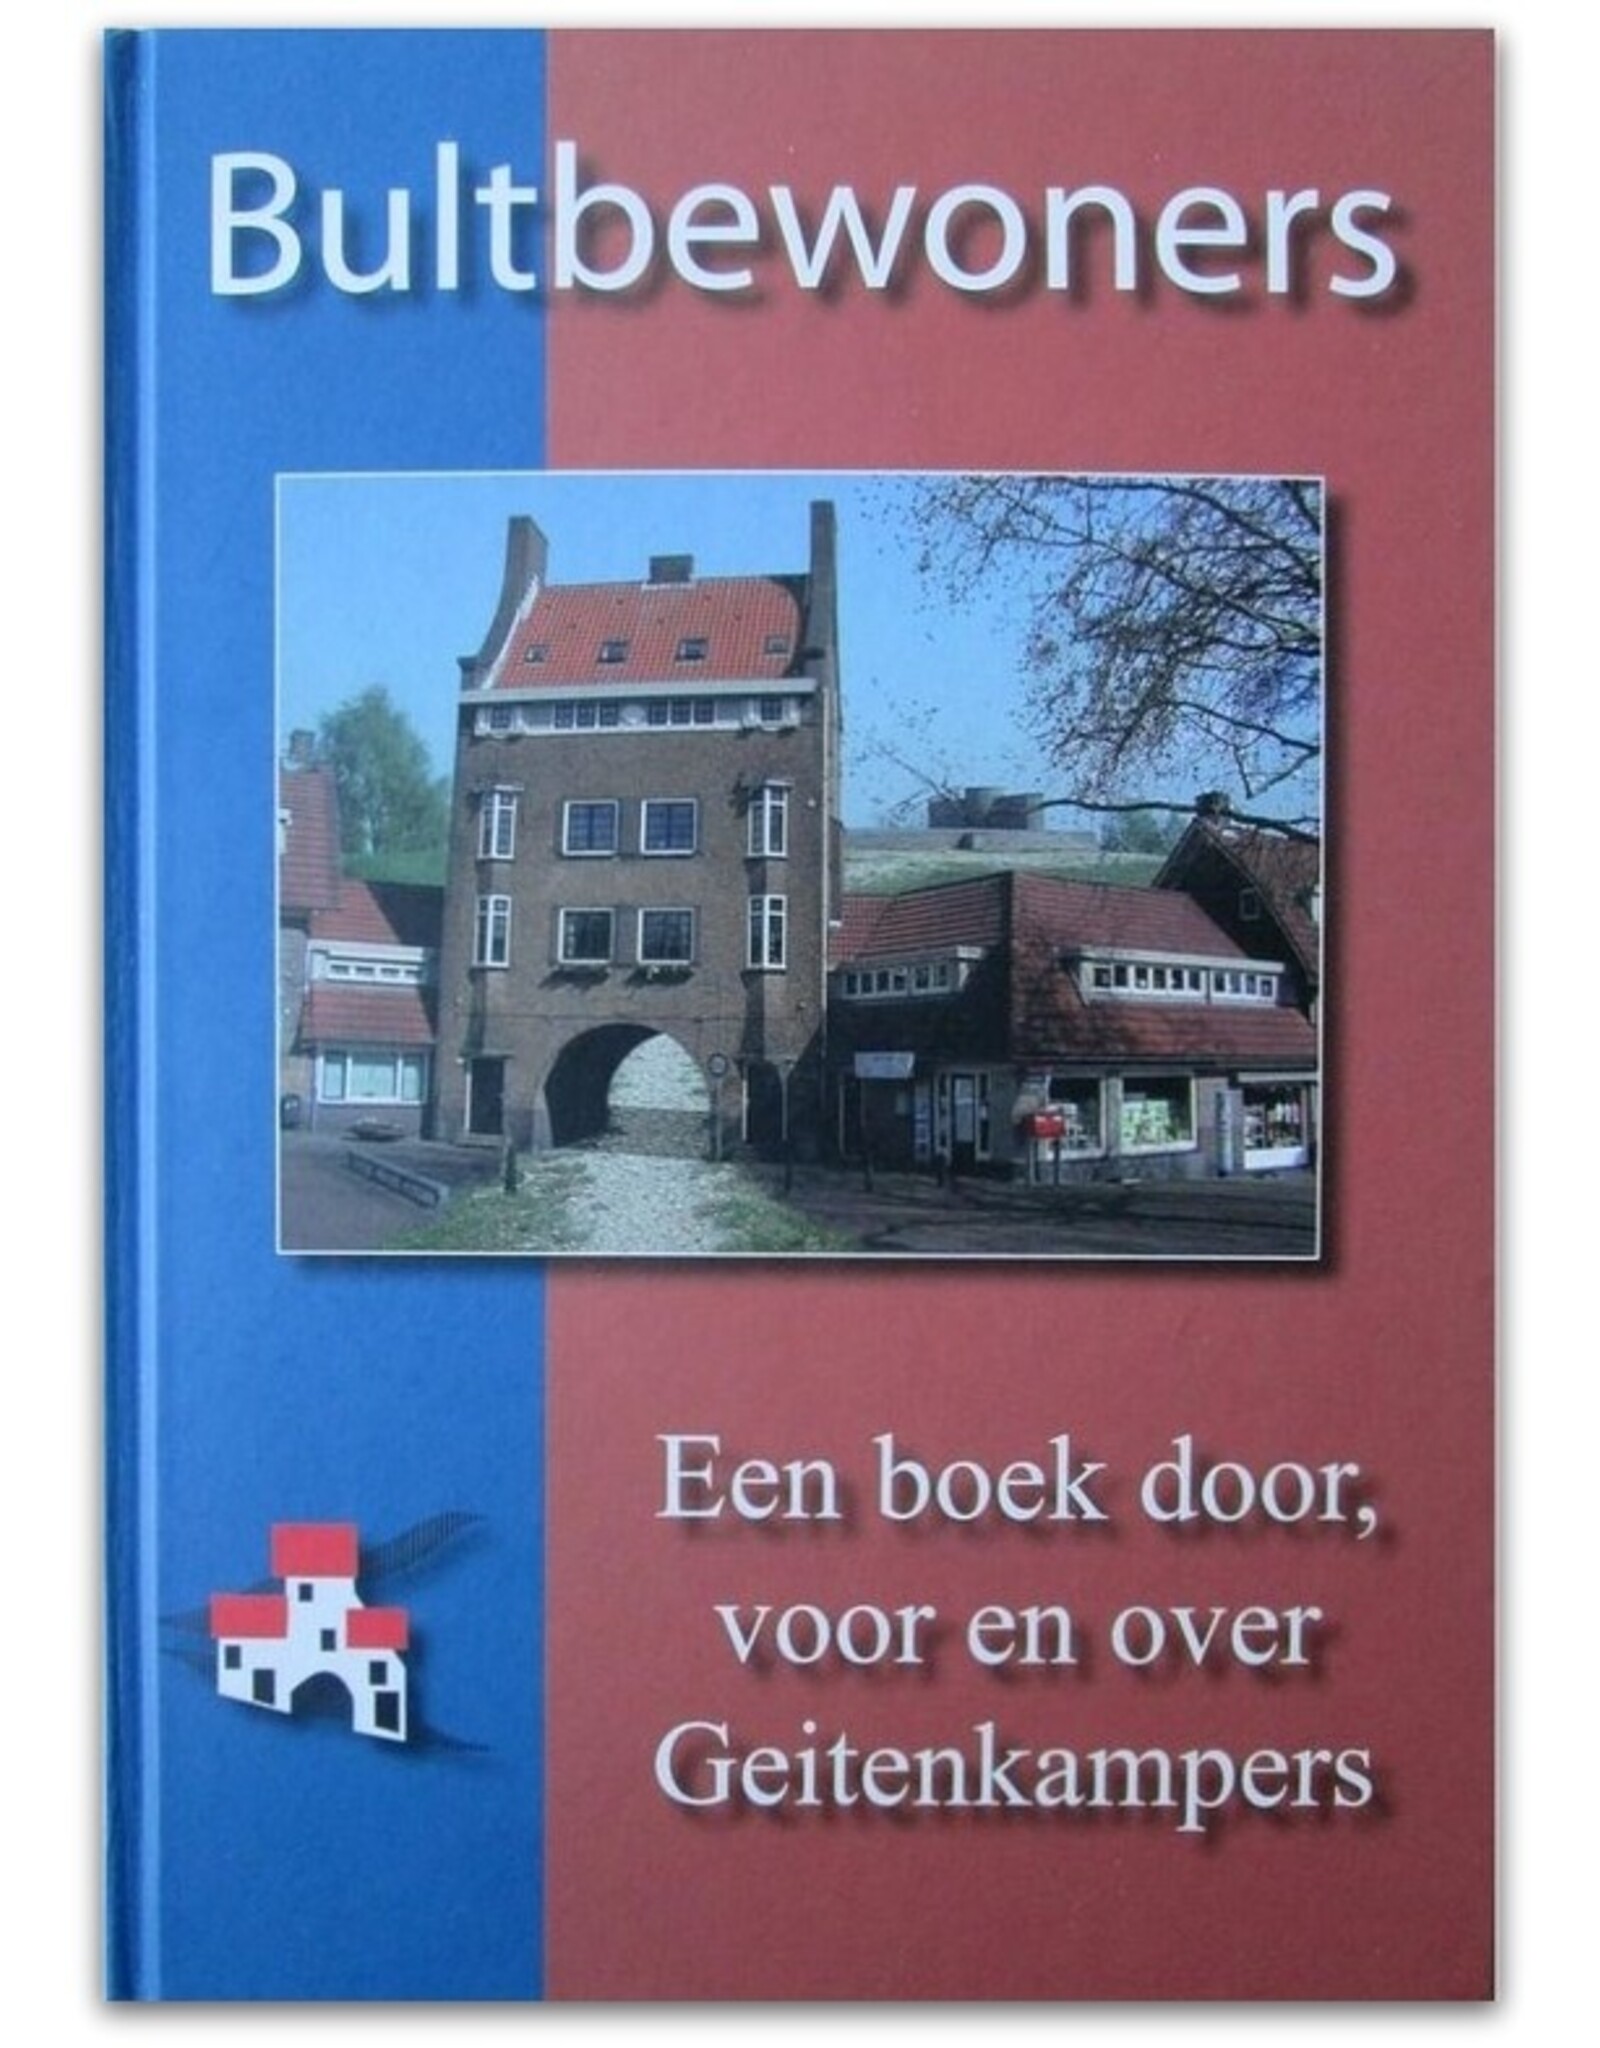 Abel Brouwer [i.a., ed.] - Bultbewoners. Een boek door, voor en over Geitenkampers